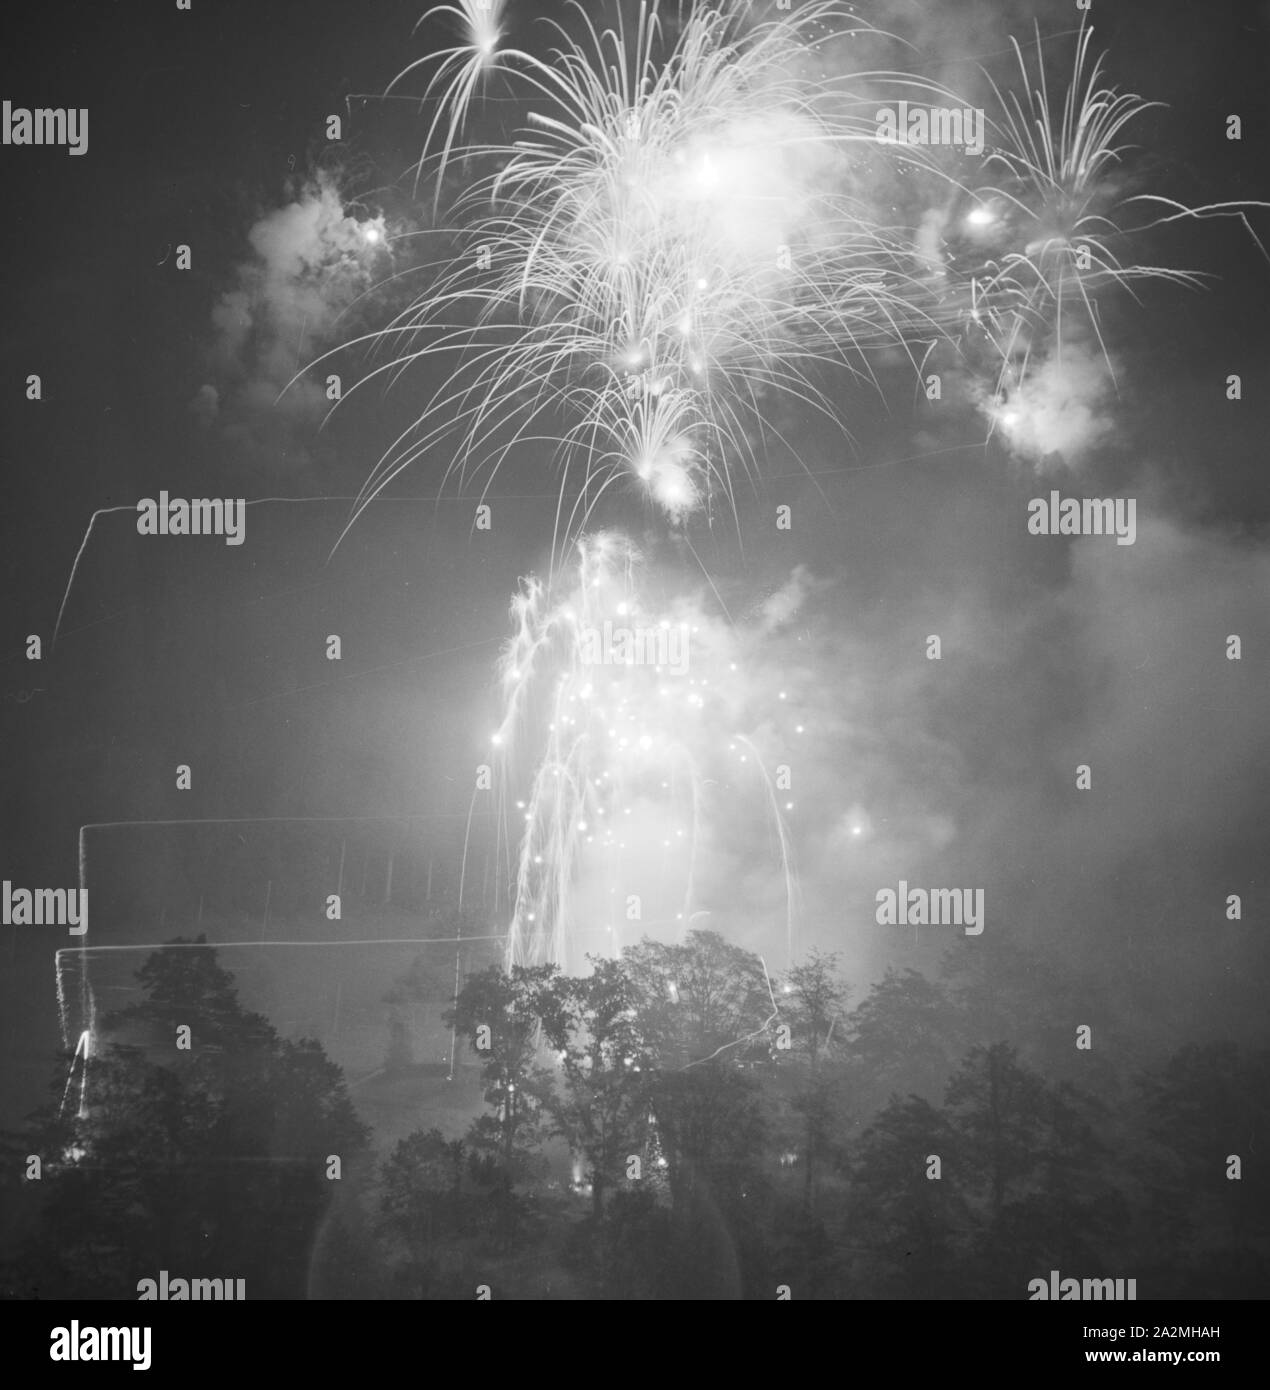 Feuerwerk, Deutschland 1930er Jahre. Fireworks display, Germany 1930s. Stock Photo